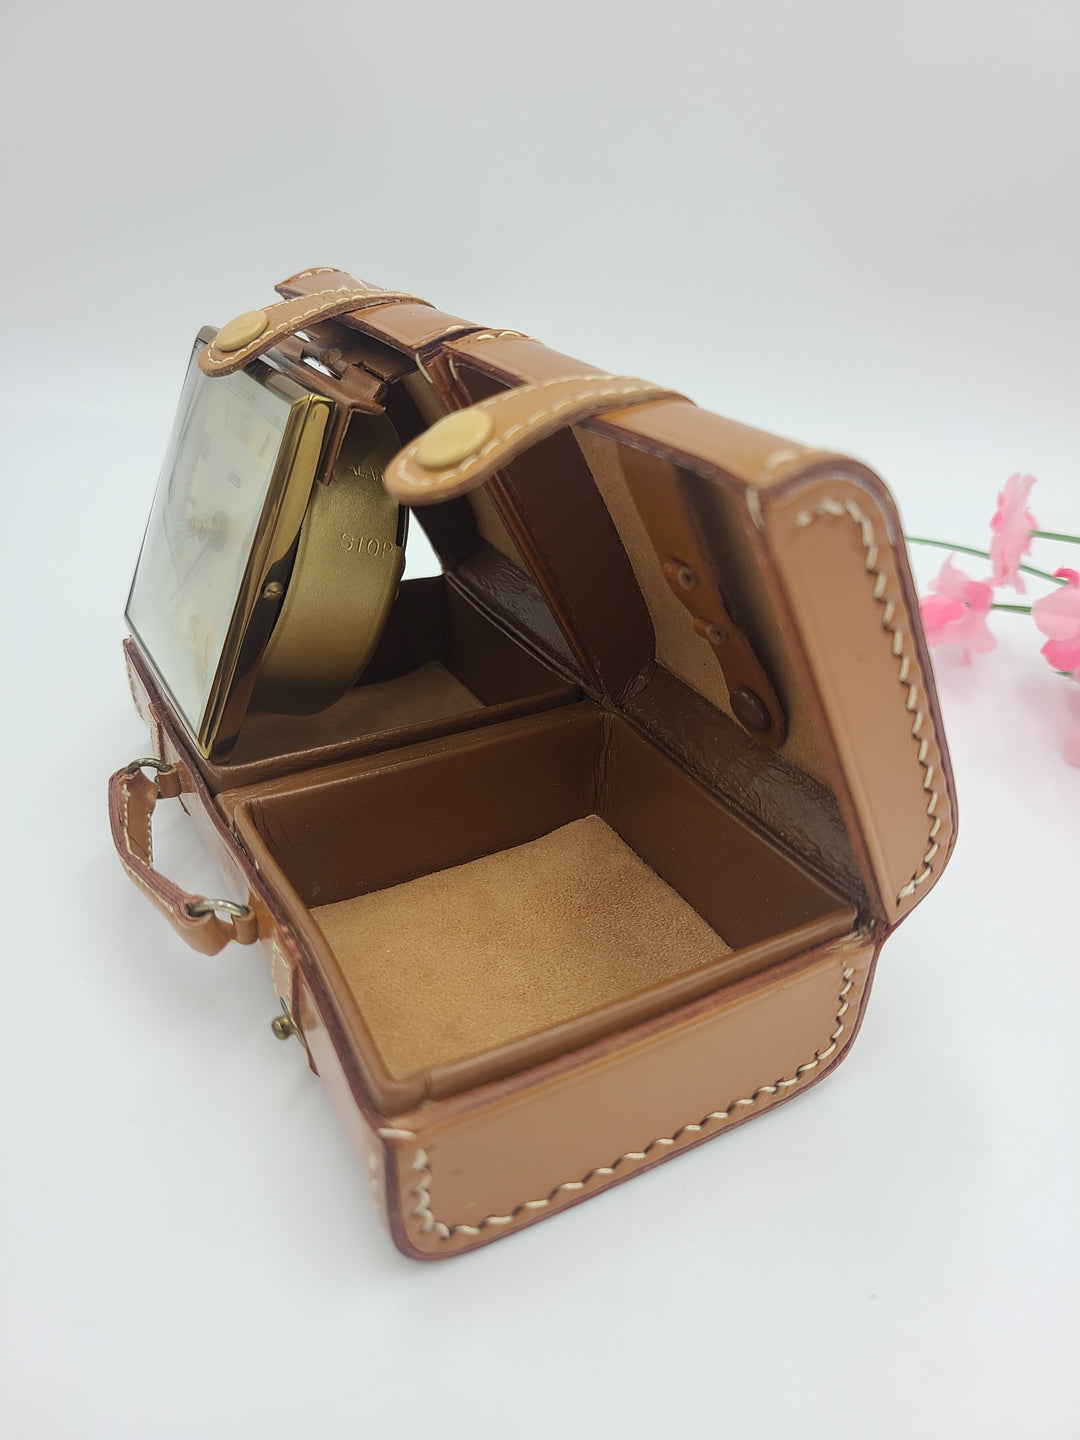 h403 (2) Leather Luggage Style Folding Endura Travel Alarm Clocks